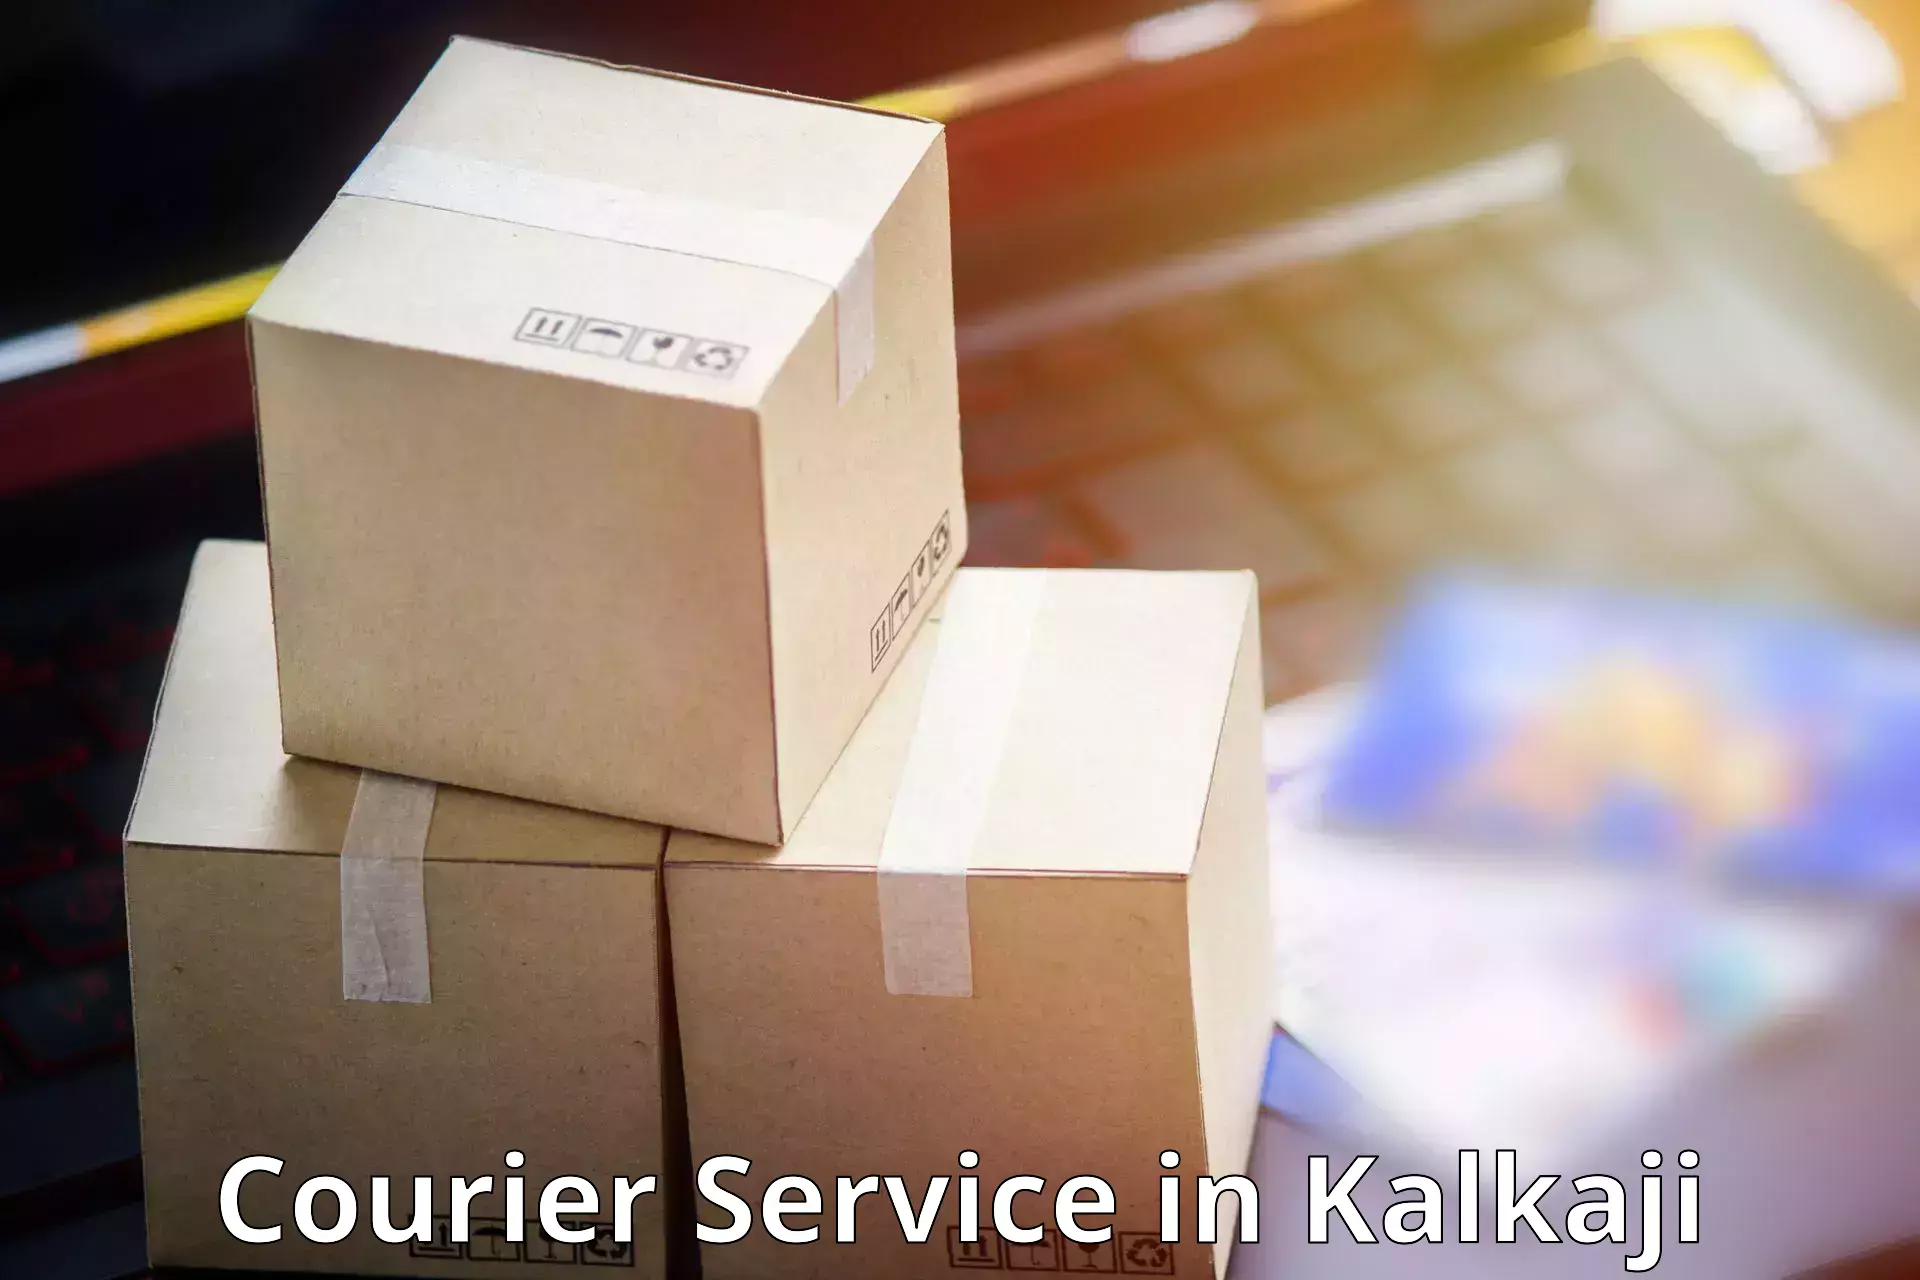 Customizable delivery plans in Kalkaji